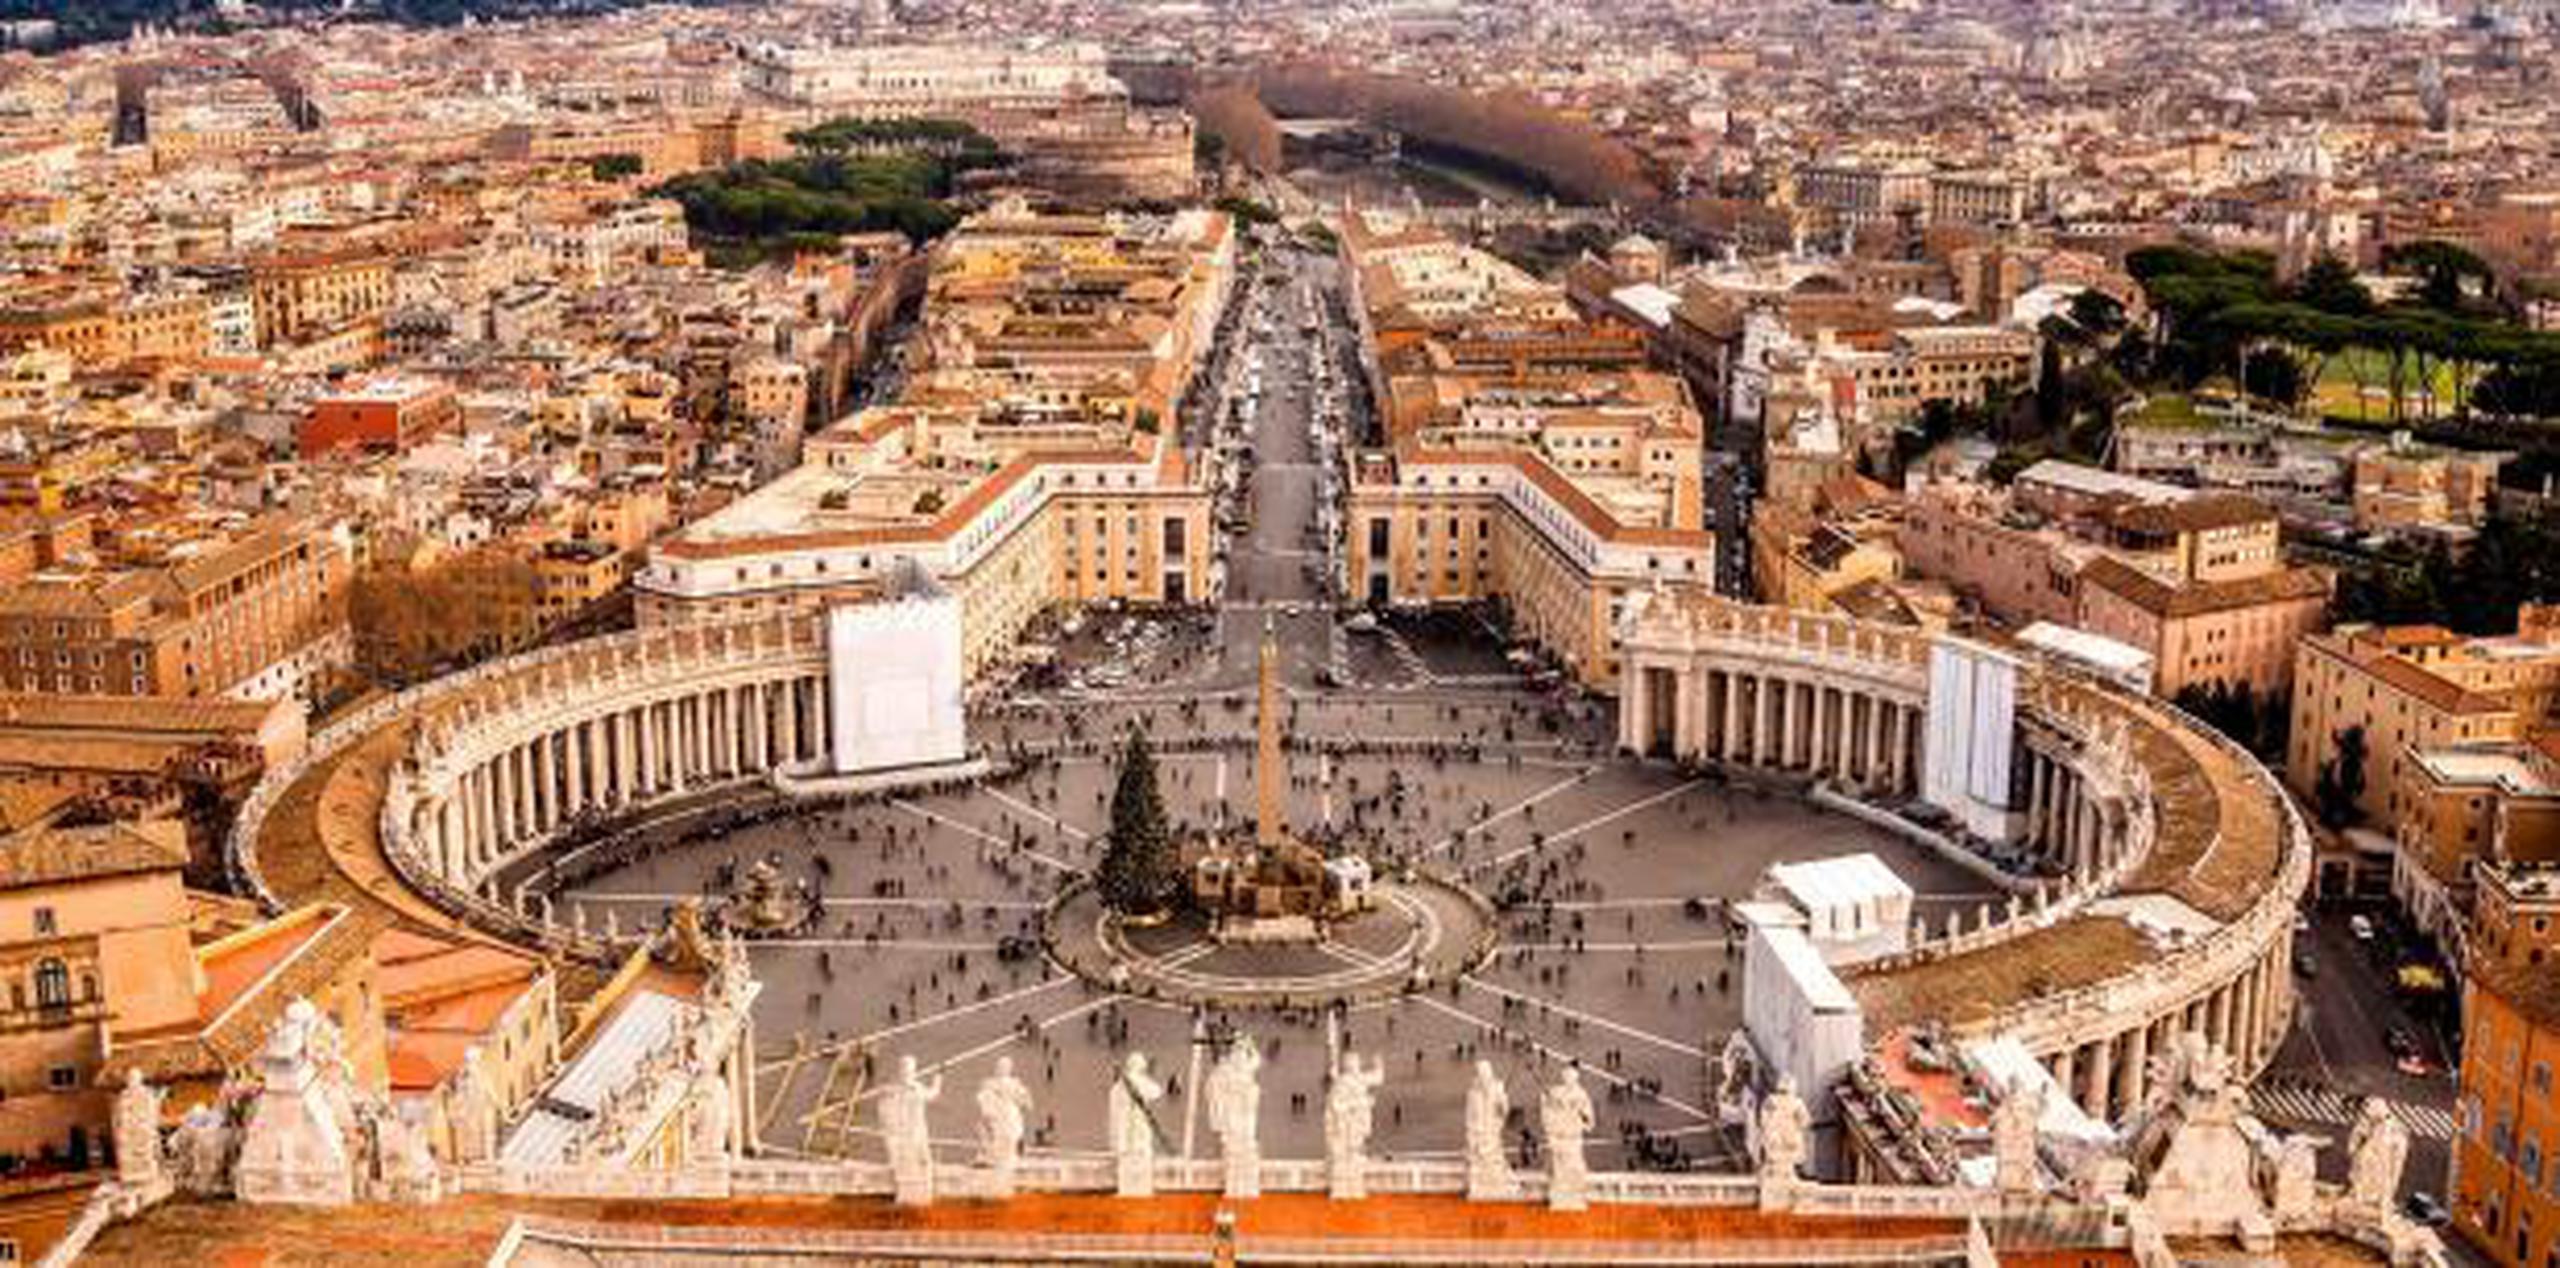 El juicio continuará el sábado, cuando es probable que se dicte un veredicto y la sentencia. En la foto, la Ciudad del Vaticano. (Shutterstock)